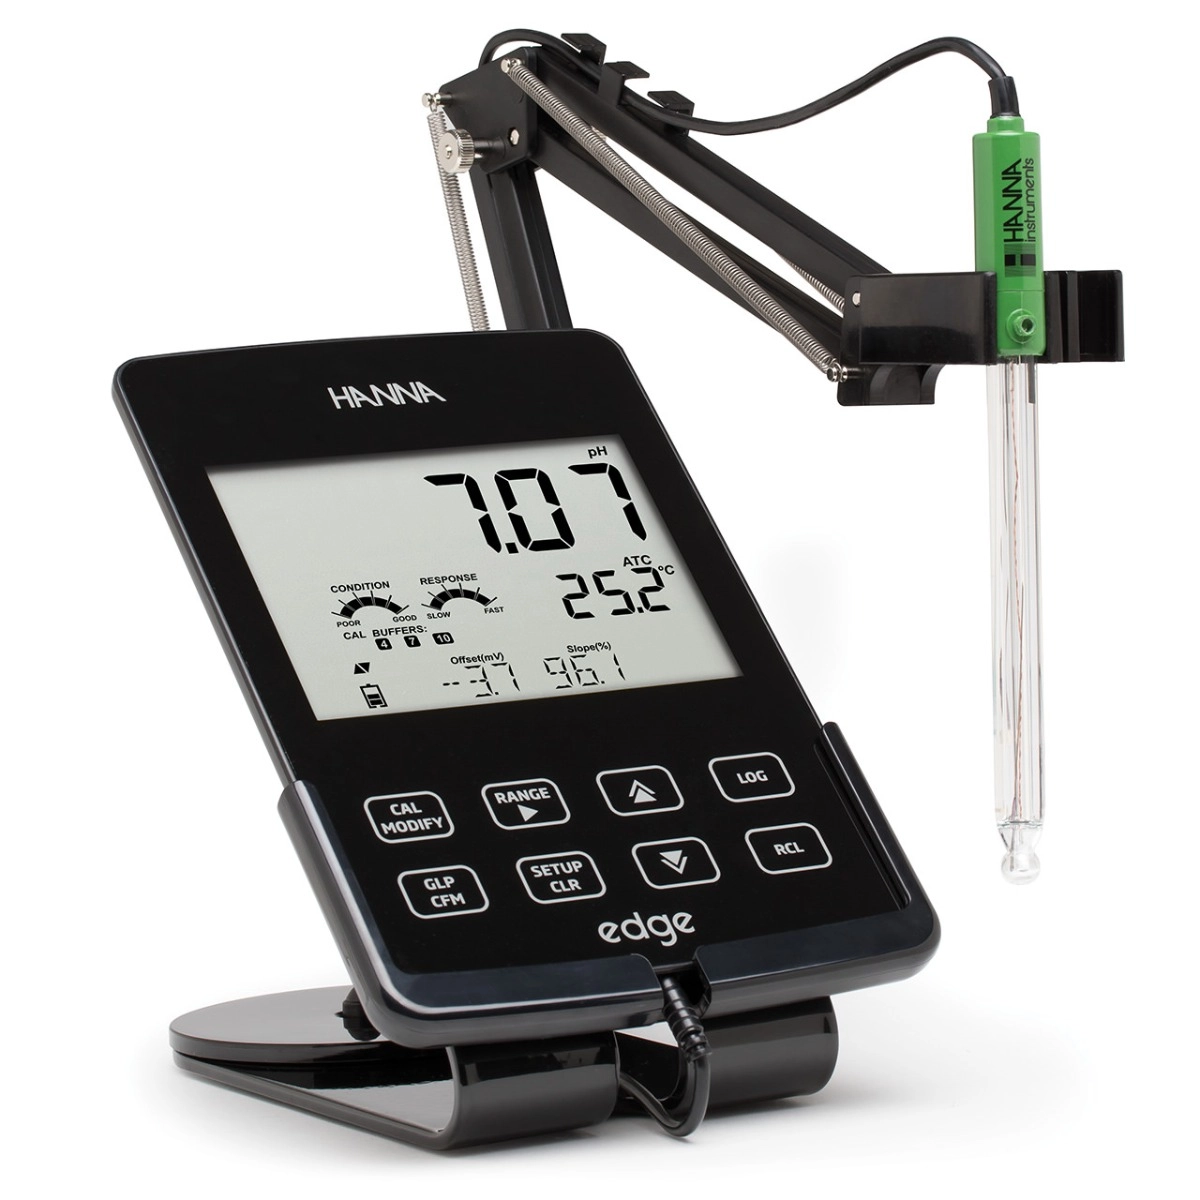 Hanna HI 2020 (edge pH kit) Digital, Portable pH Meter